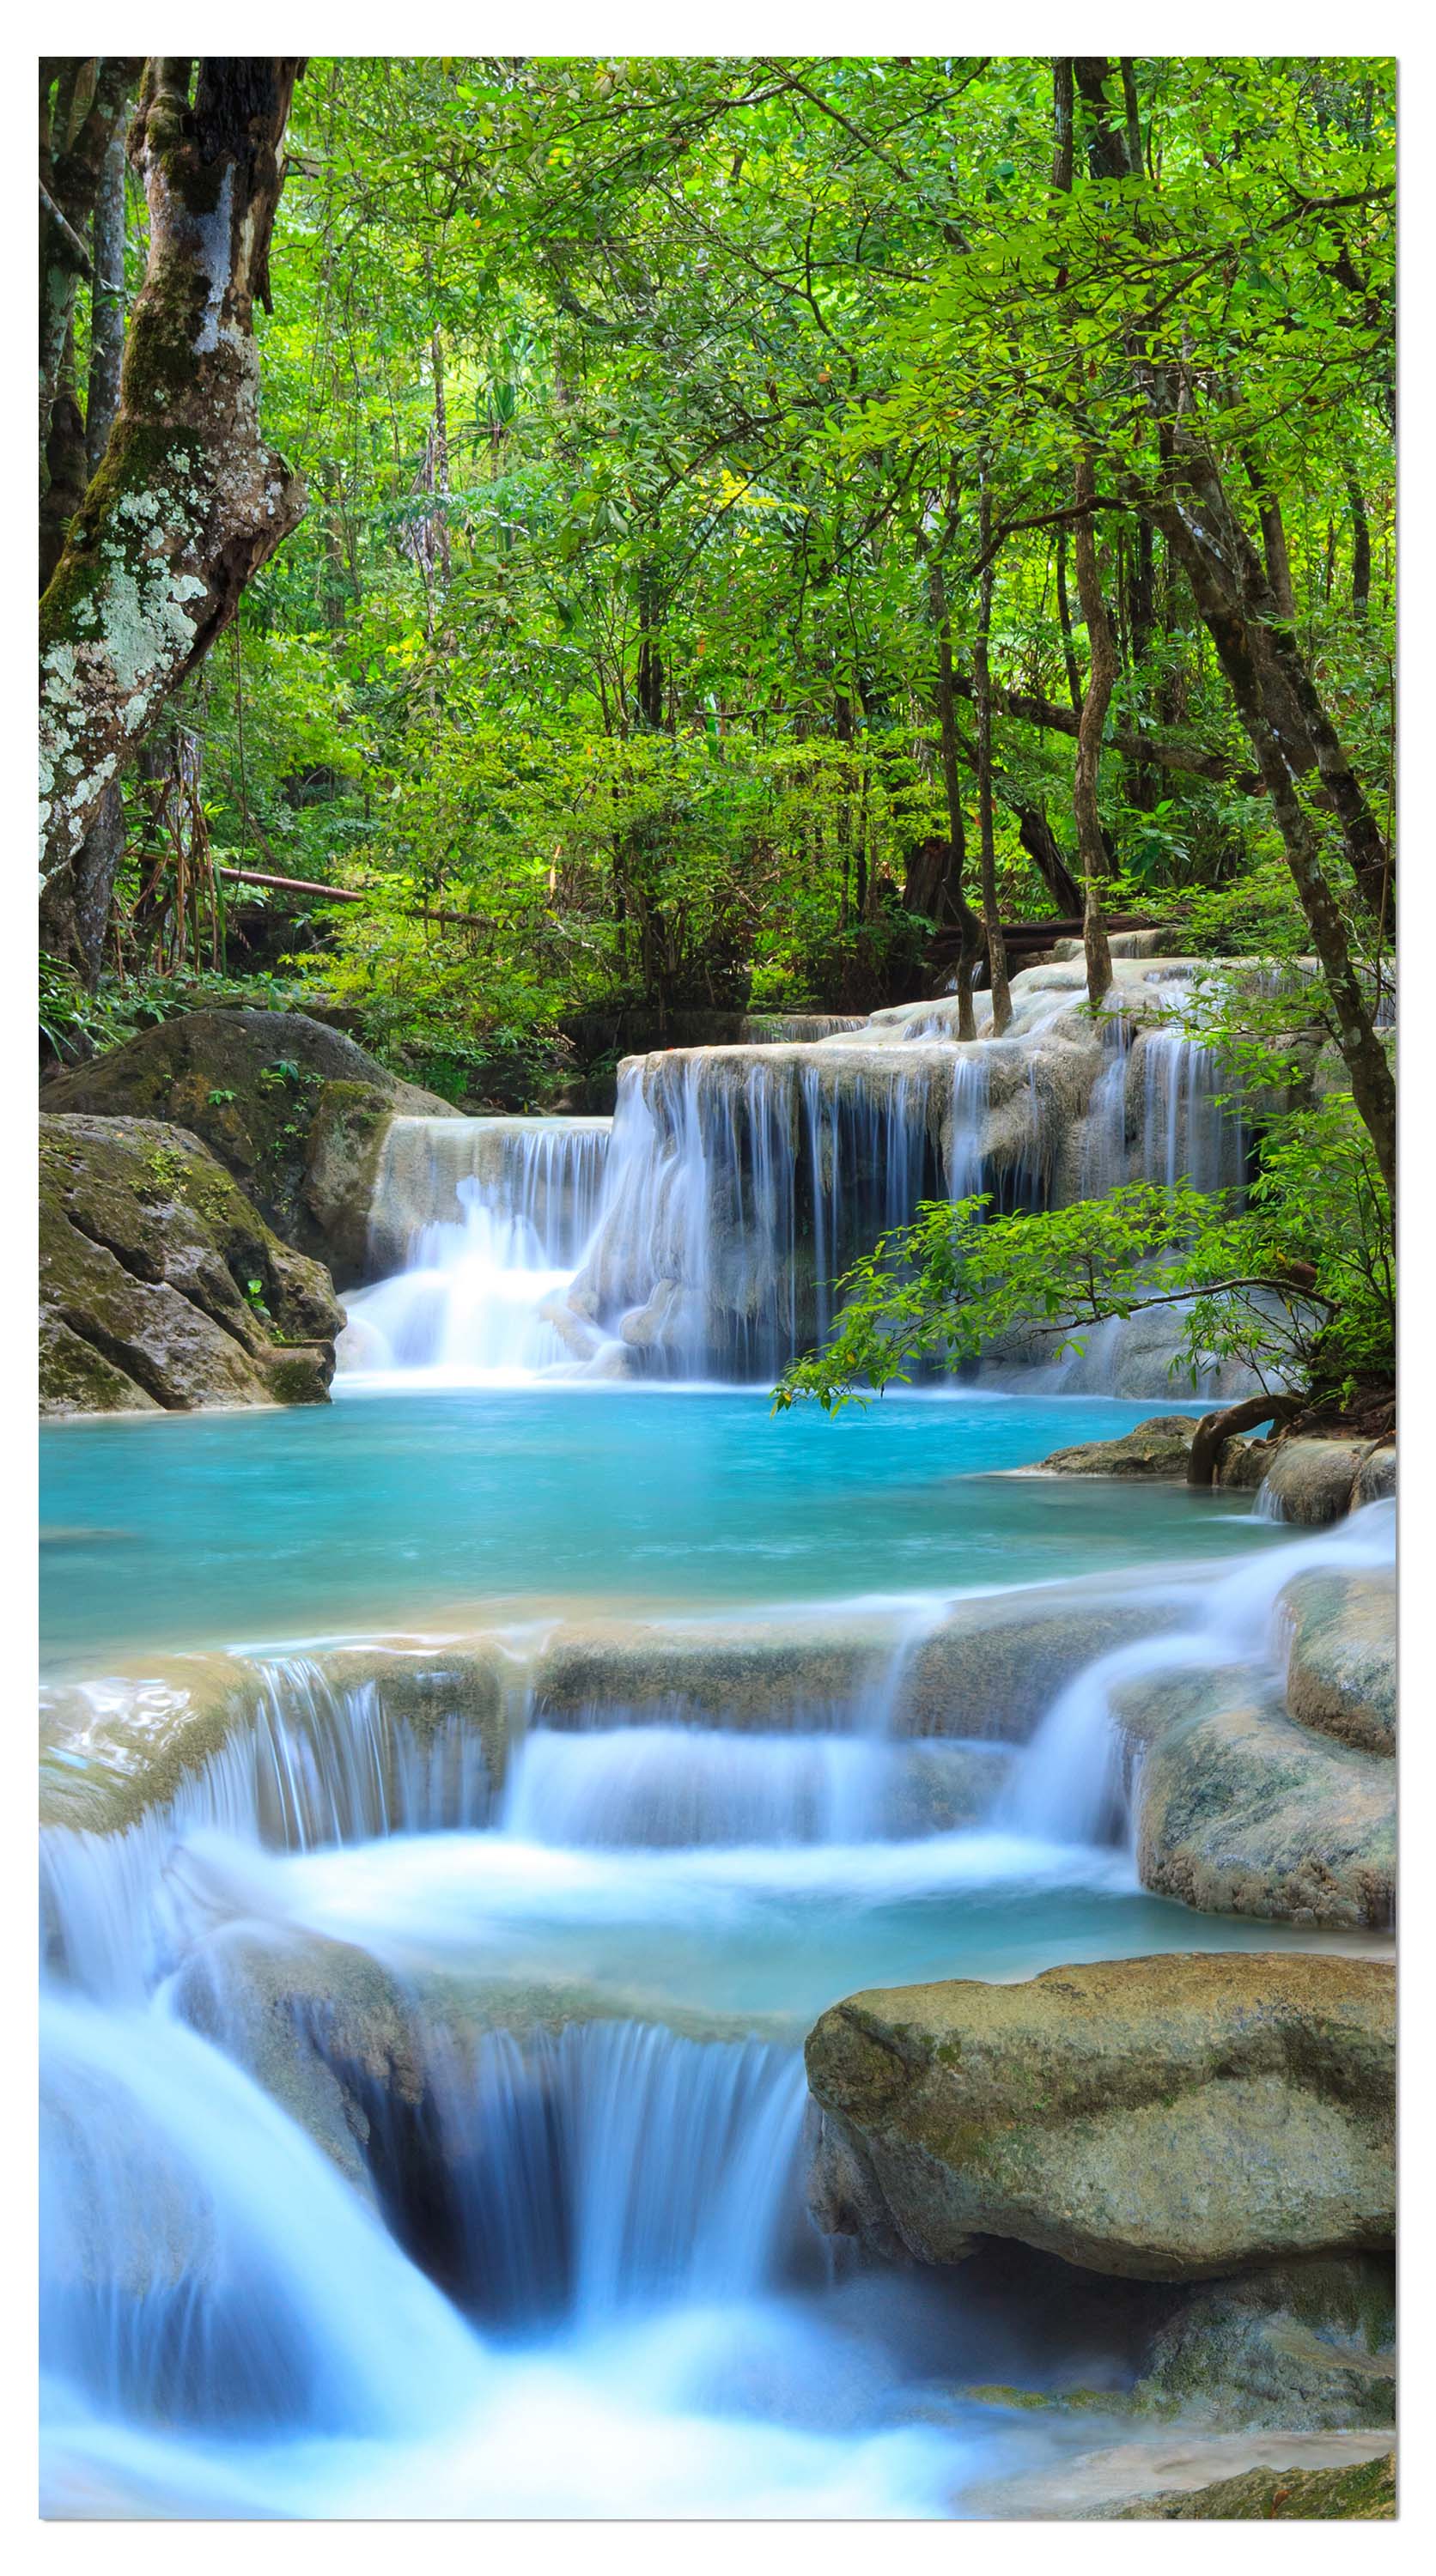 Garderobe Wasserfall im Wald M0485 entdecken - Bild 4